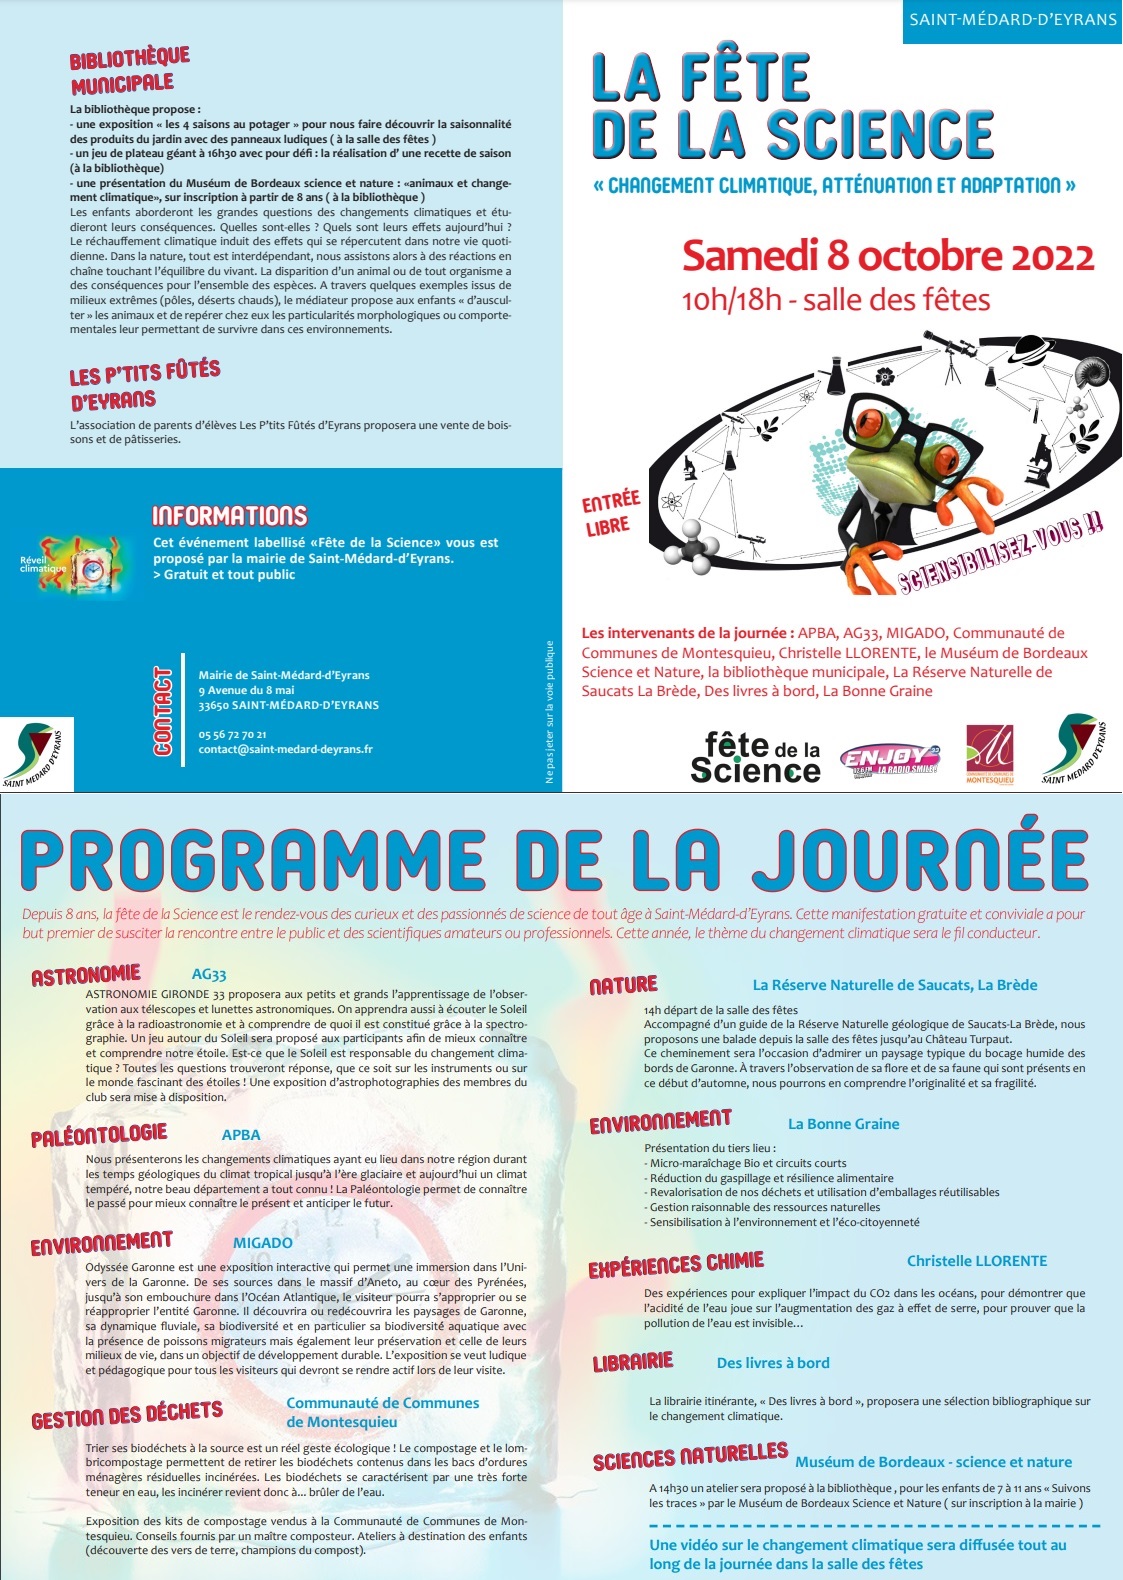 FÊTE DE LA SCIENCE samedi 8 octobre 2022 à Saint-Médard d'Eyrans Sans_t20